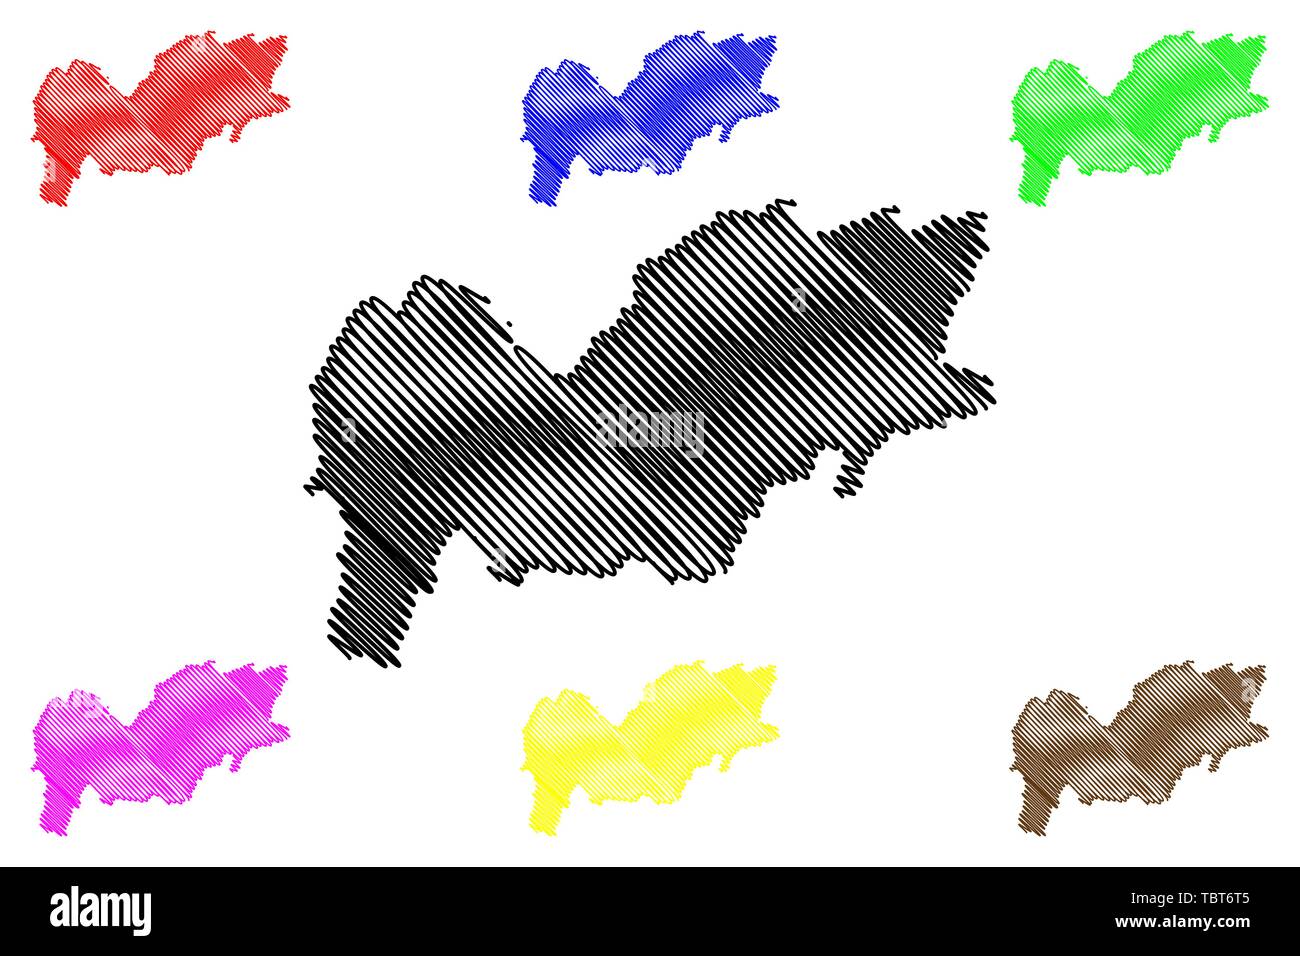 Provincia Urozgan (Repubblica Islamica dell'Afghanistan, province afghane) mappa illustrazione vettoriale, scribble schizzo Uruzgan o Oruzgan mappa Illustrazione Vettoriale